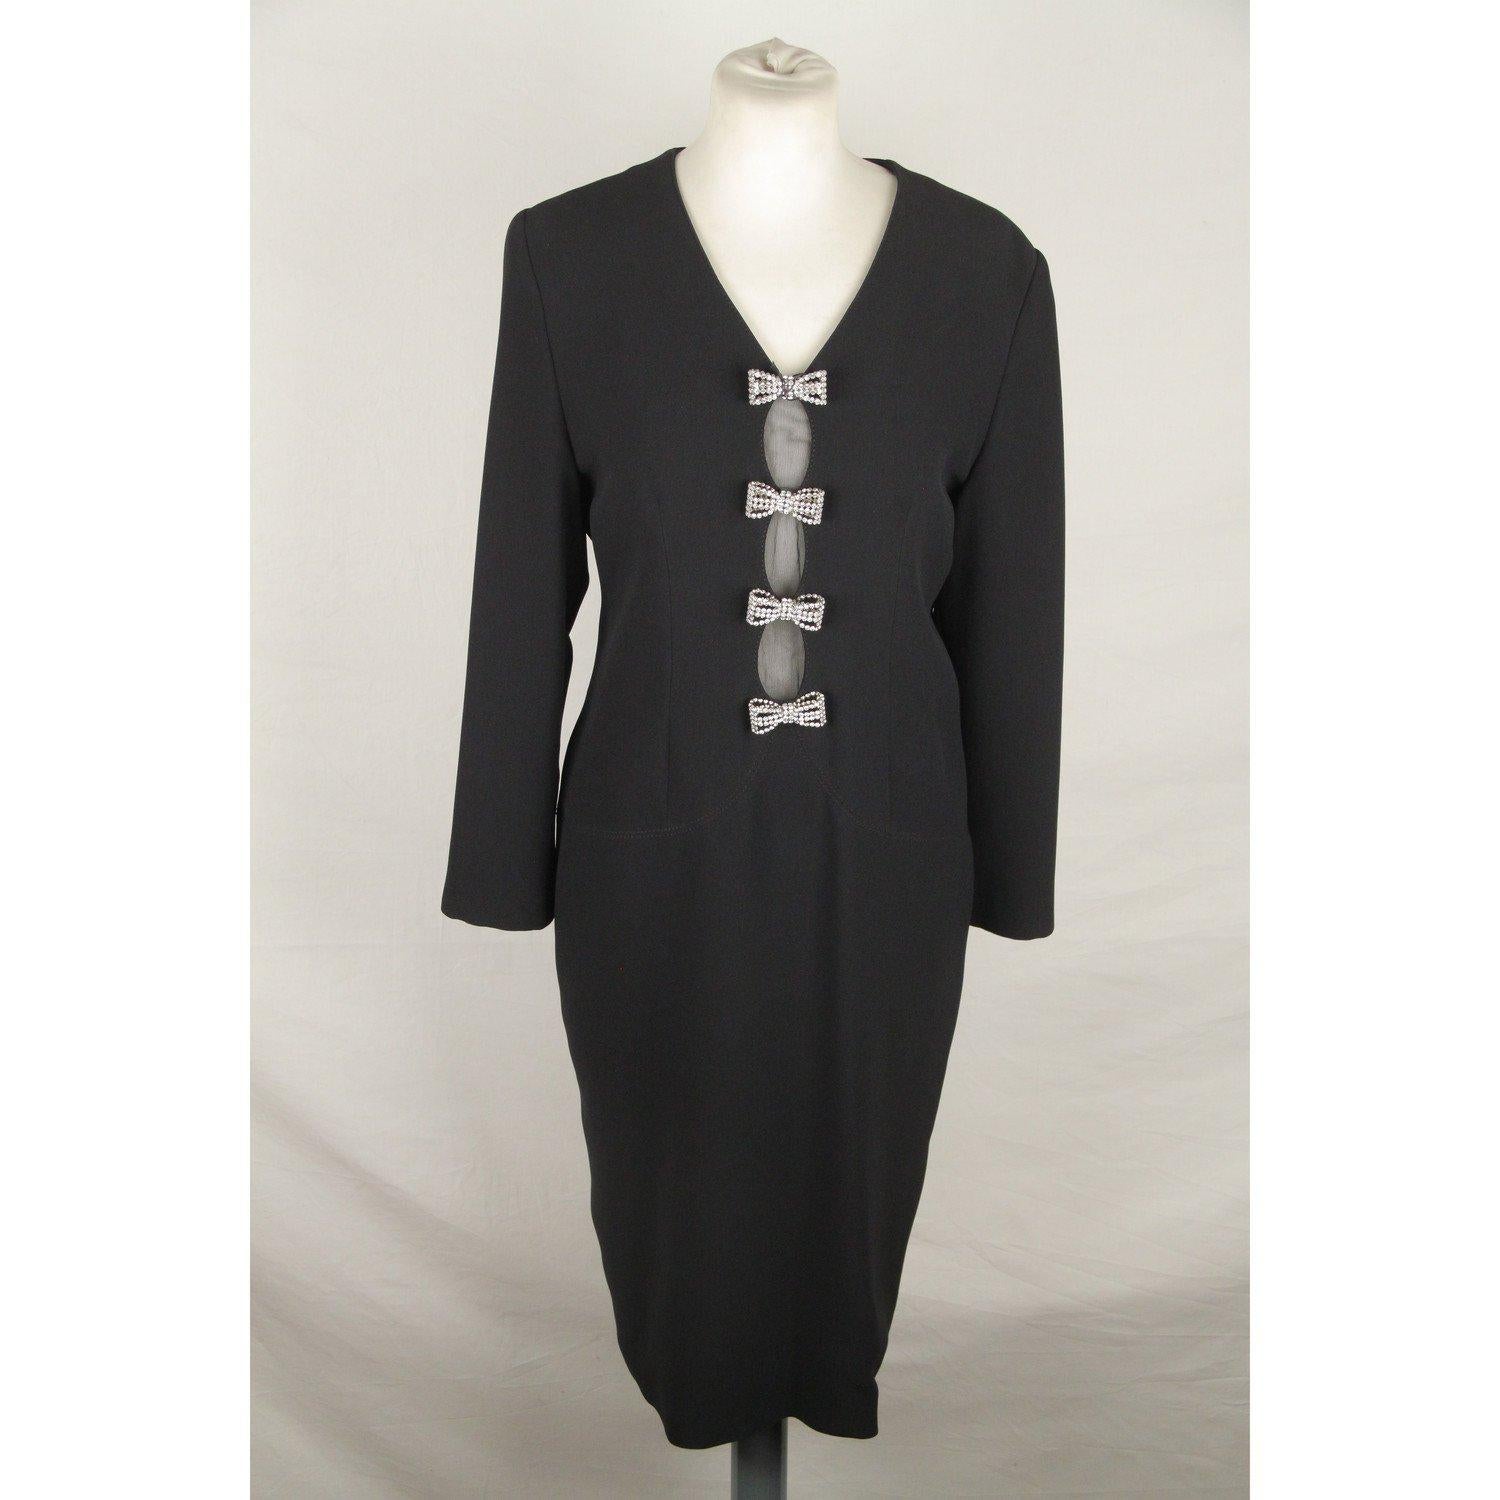 Women's GAI MATTIOLO COUTURE Vintage Black LONG SLEEVE DRESS Size 44